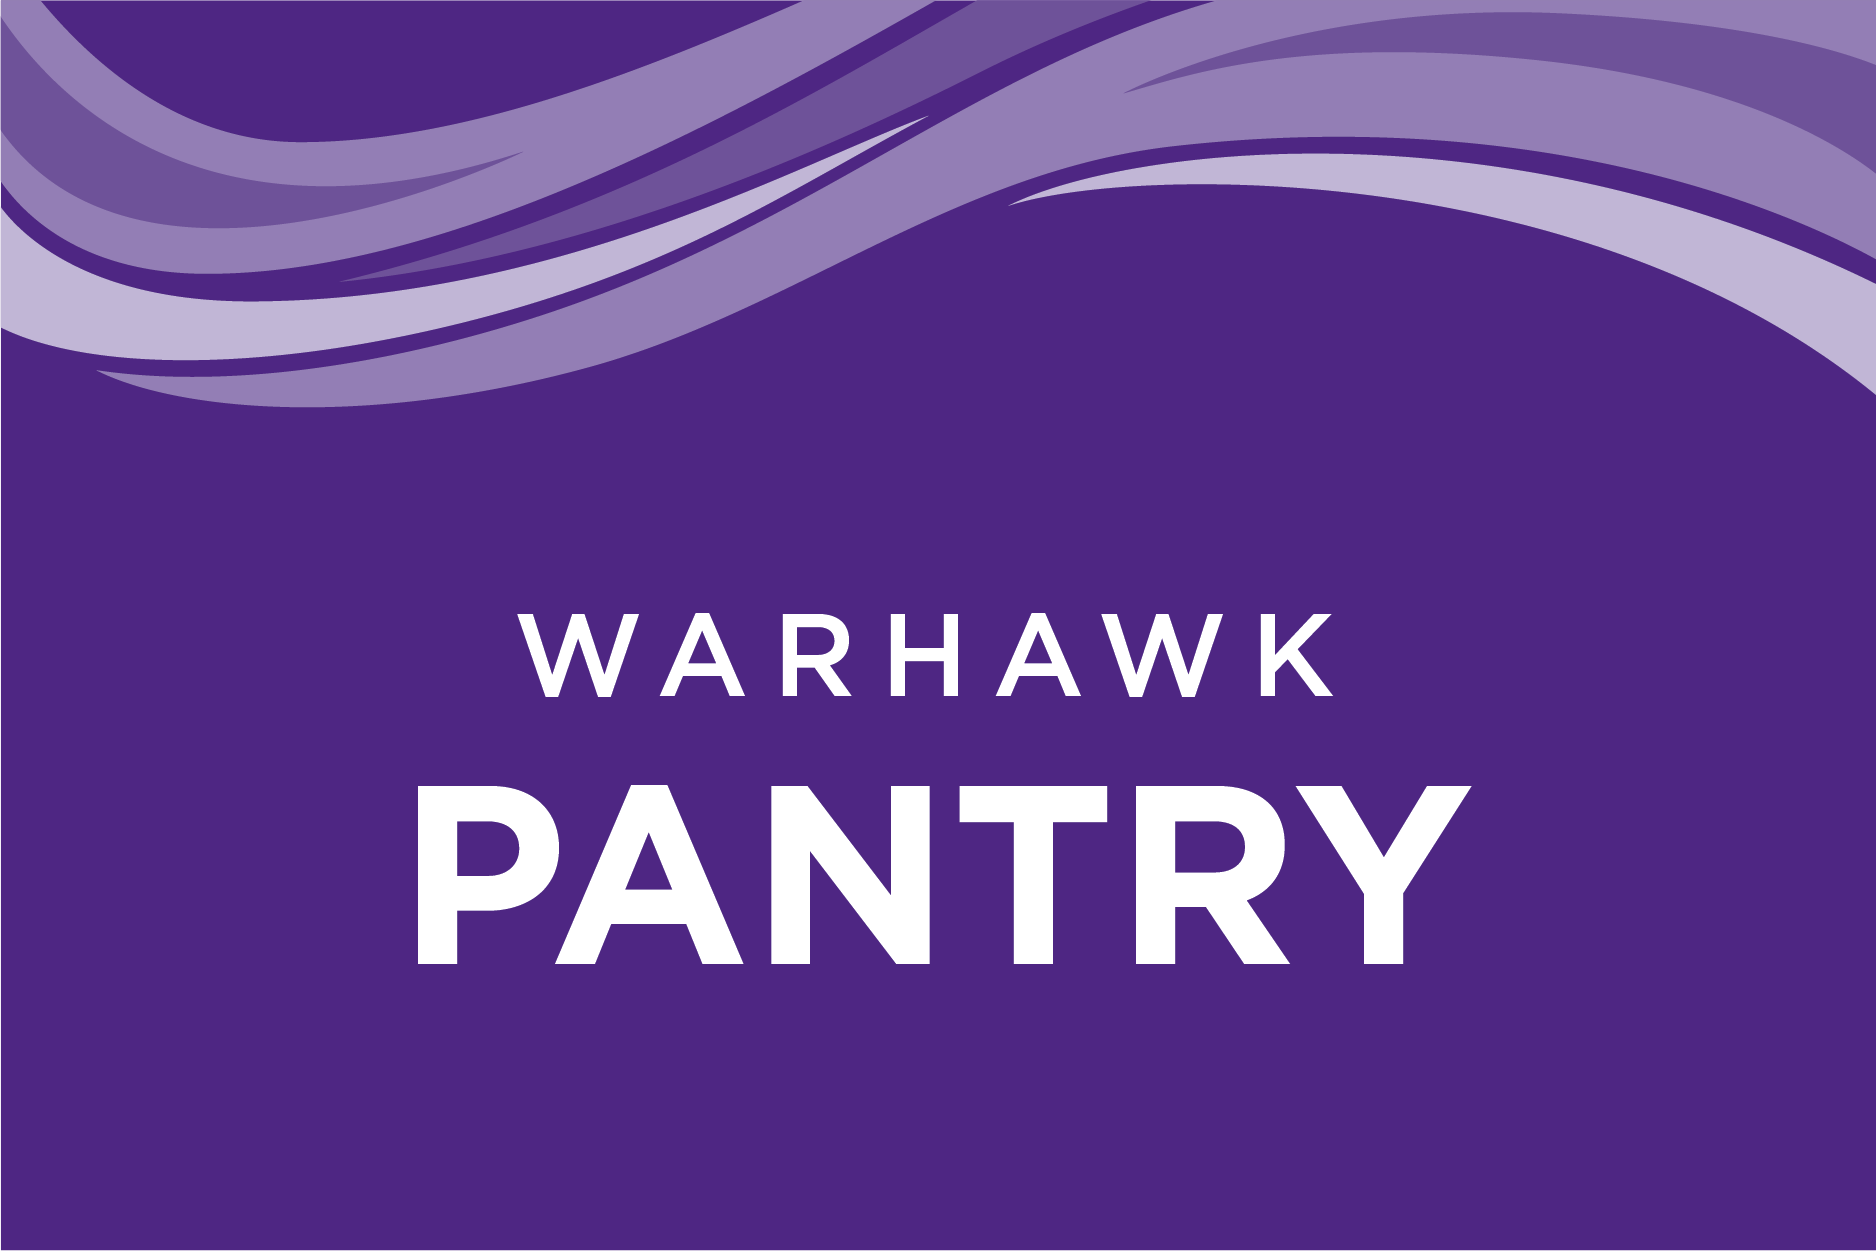 Warhawk Pantry